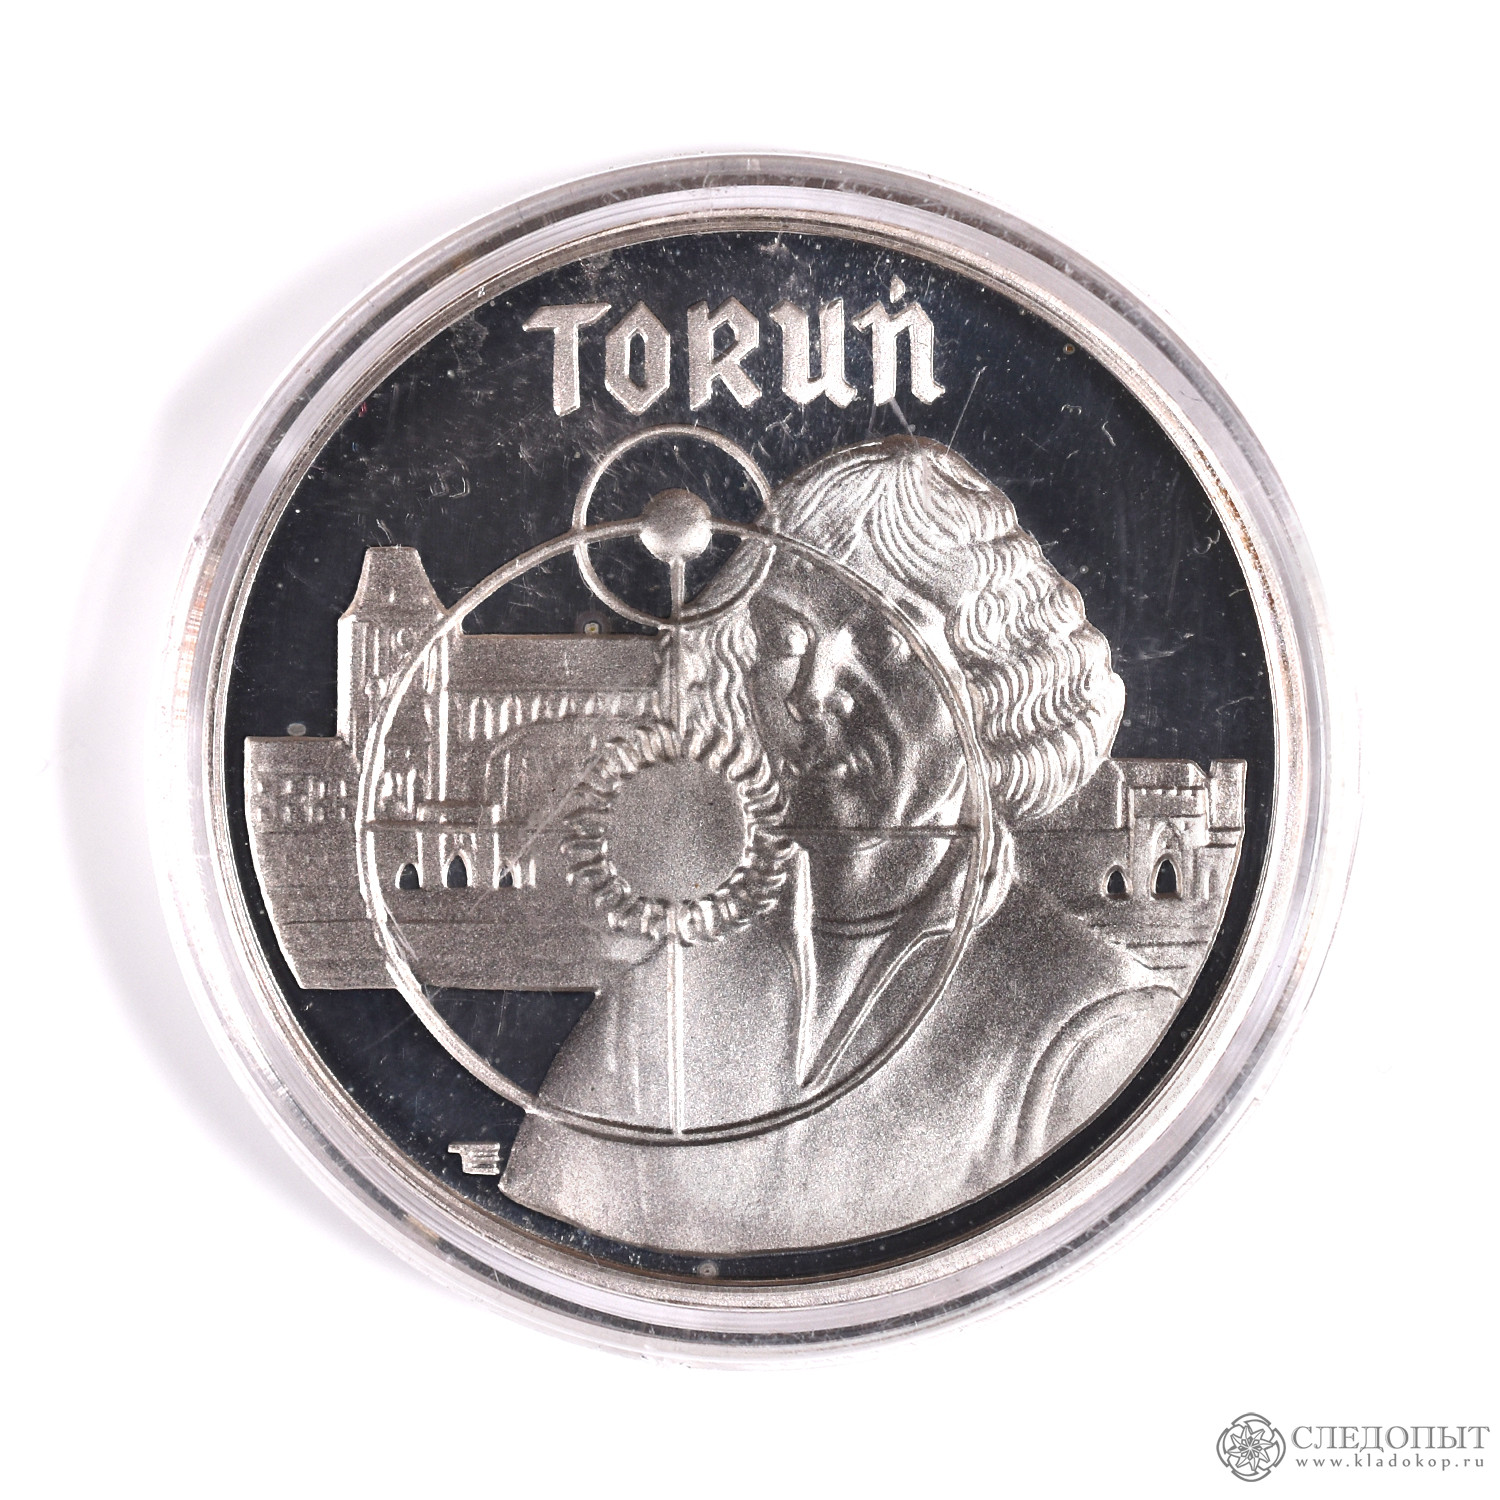 Коллекция польских монет. Польша 1990. Moneta Pol:td. 5000 злотых в рублях